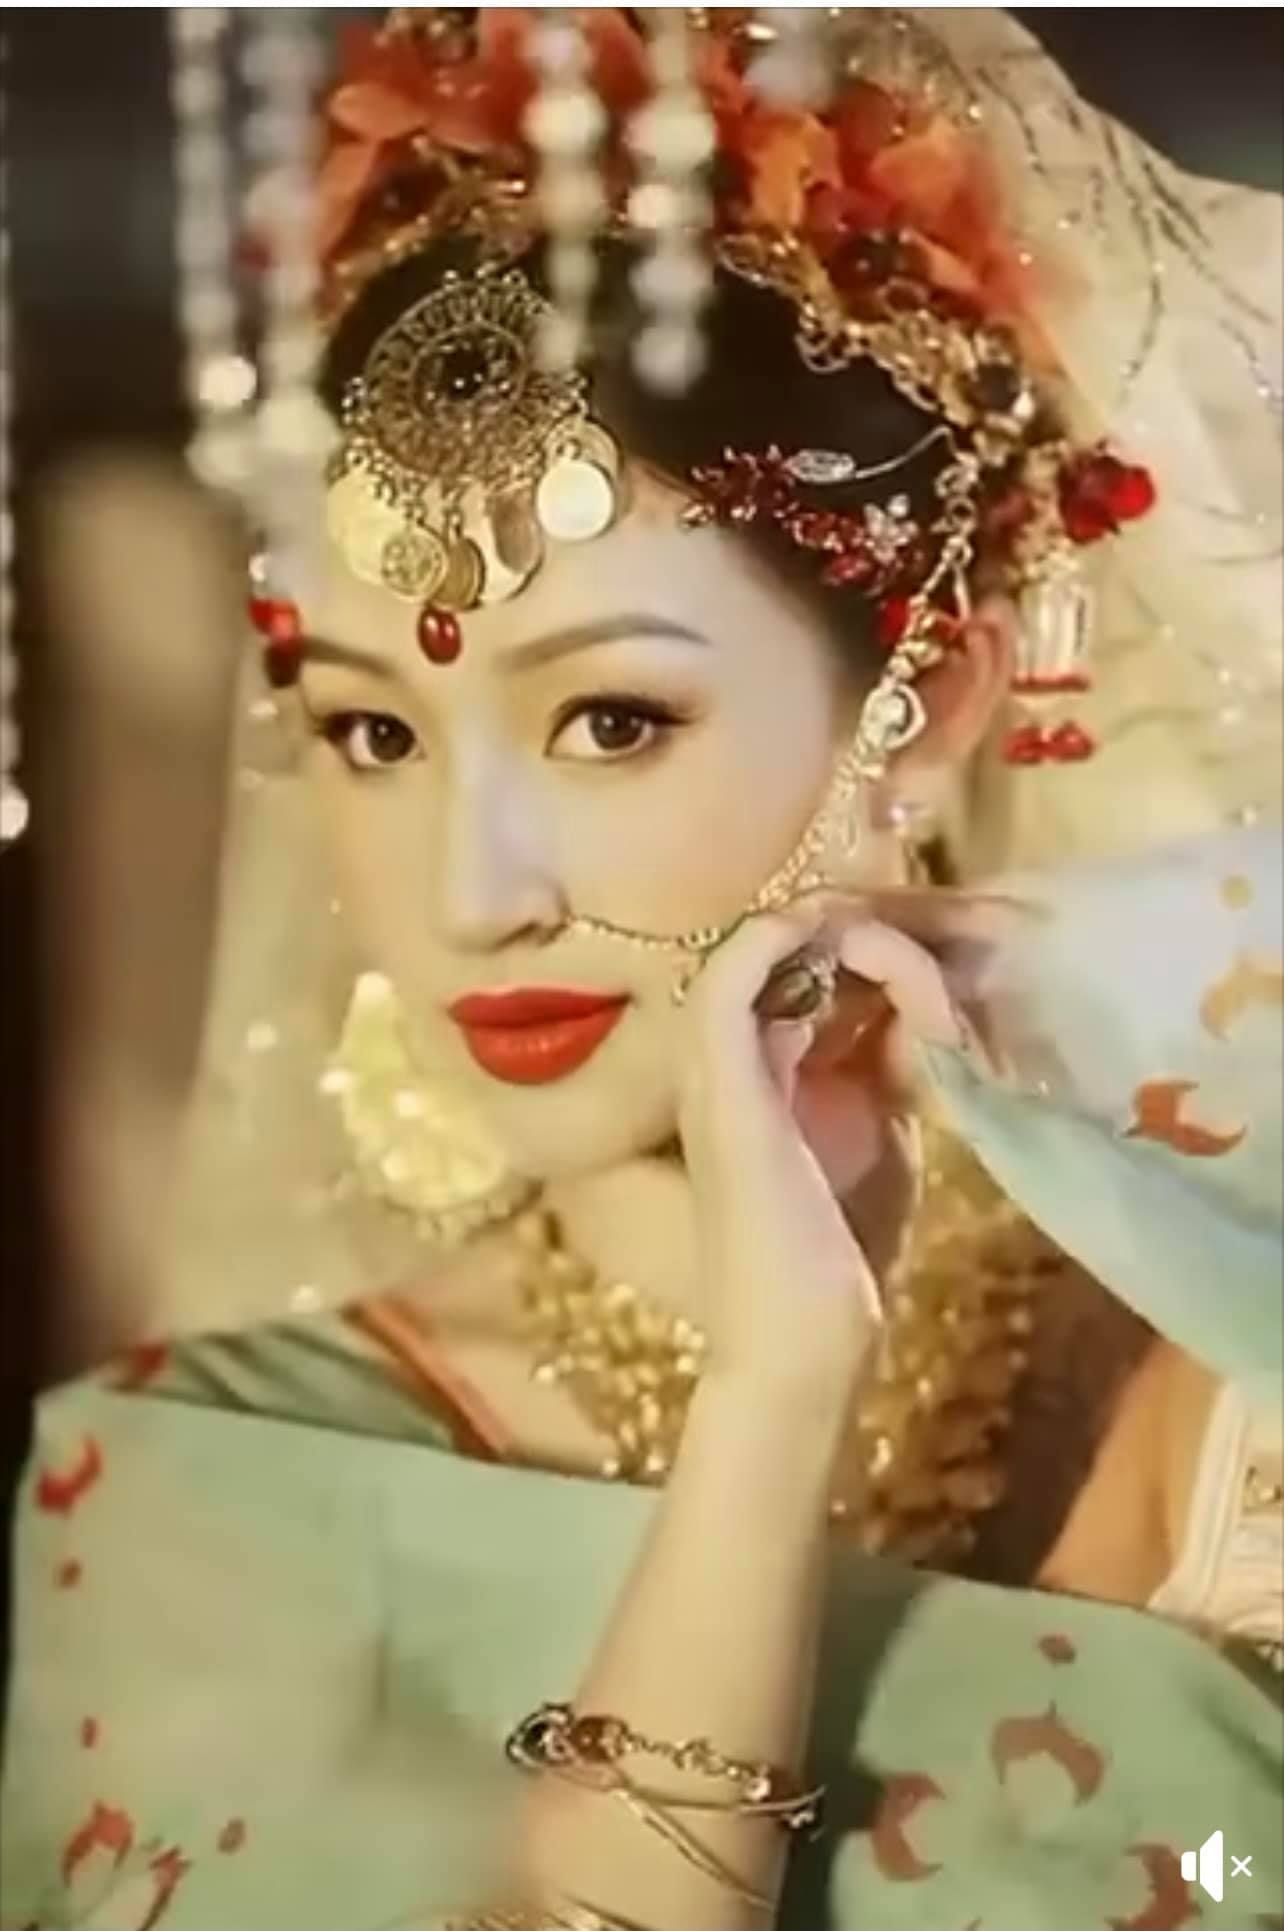 Dàn mỹ nhân Việt khoe bộ ảnh hoàng cung, Mai Phương Thuý ‘bóc trần’ sự thật khiến fan cười nắc nẻ